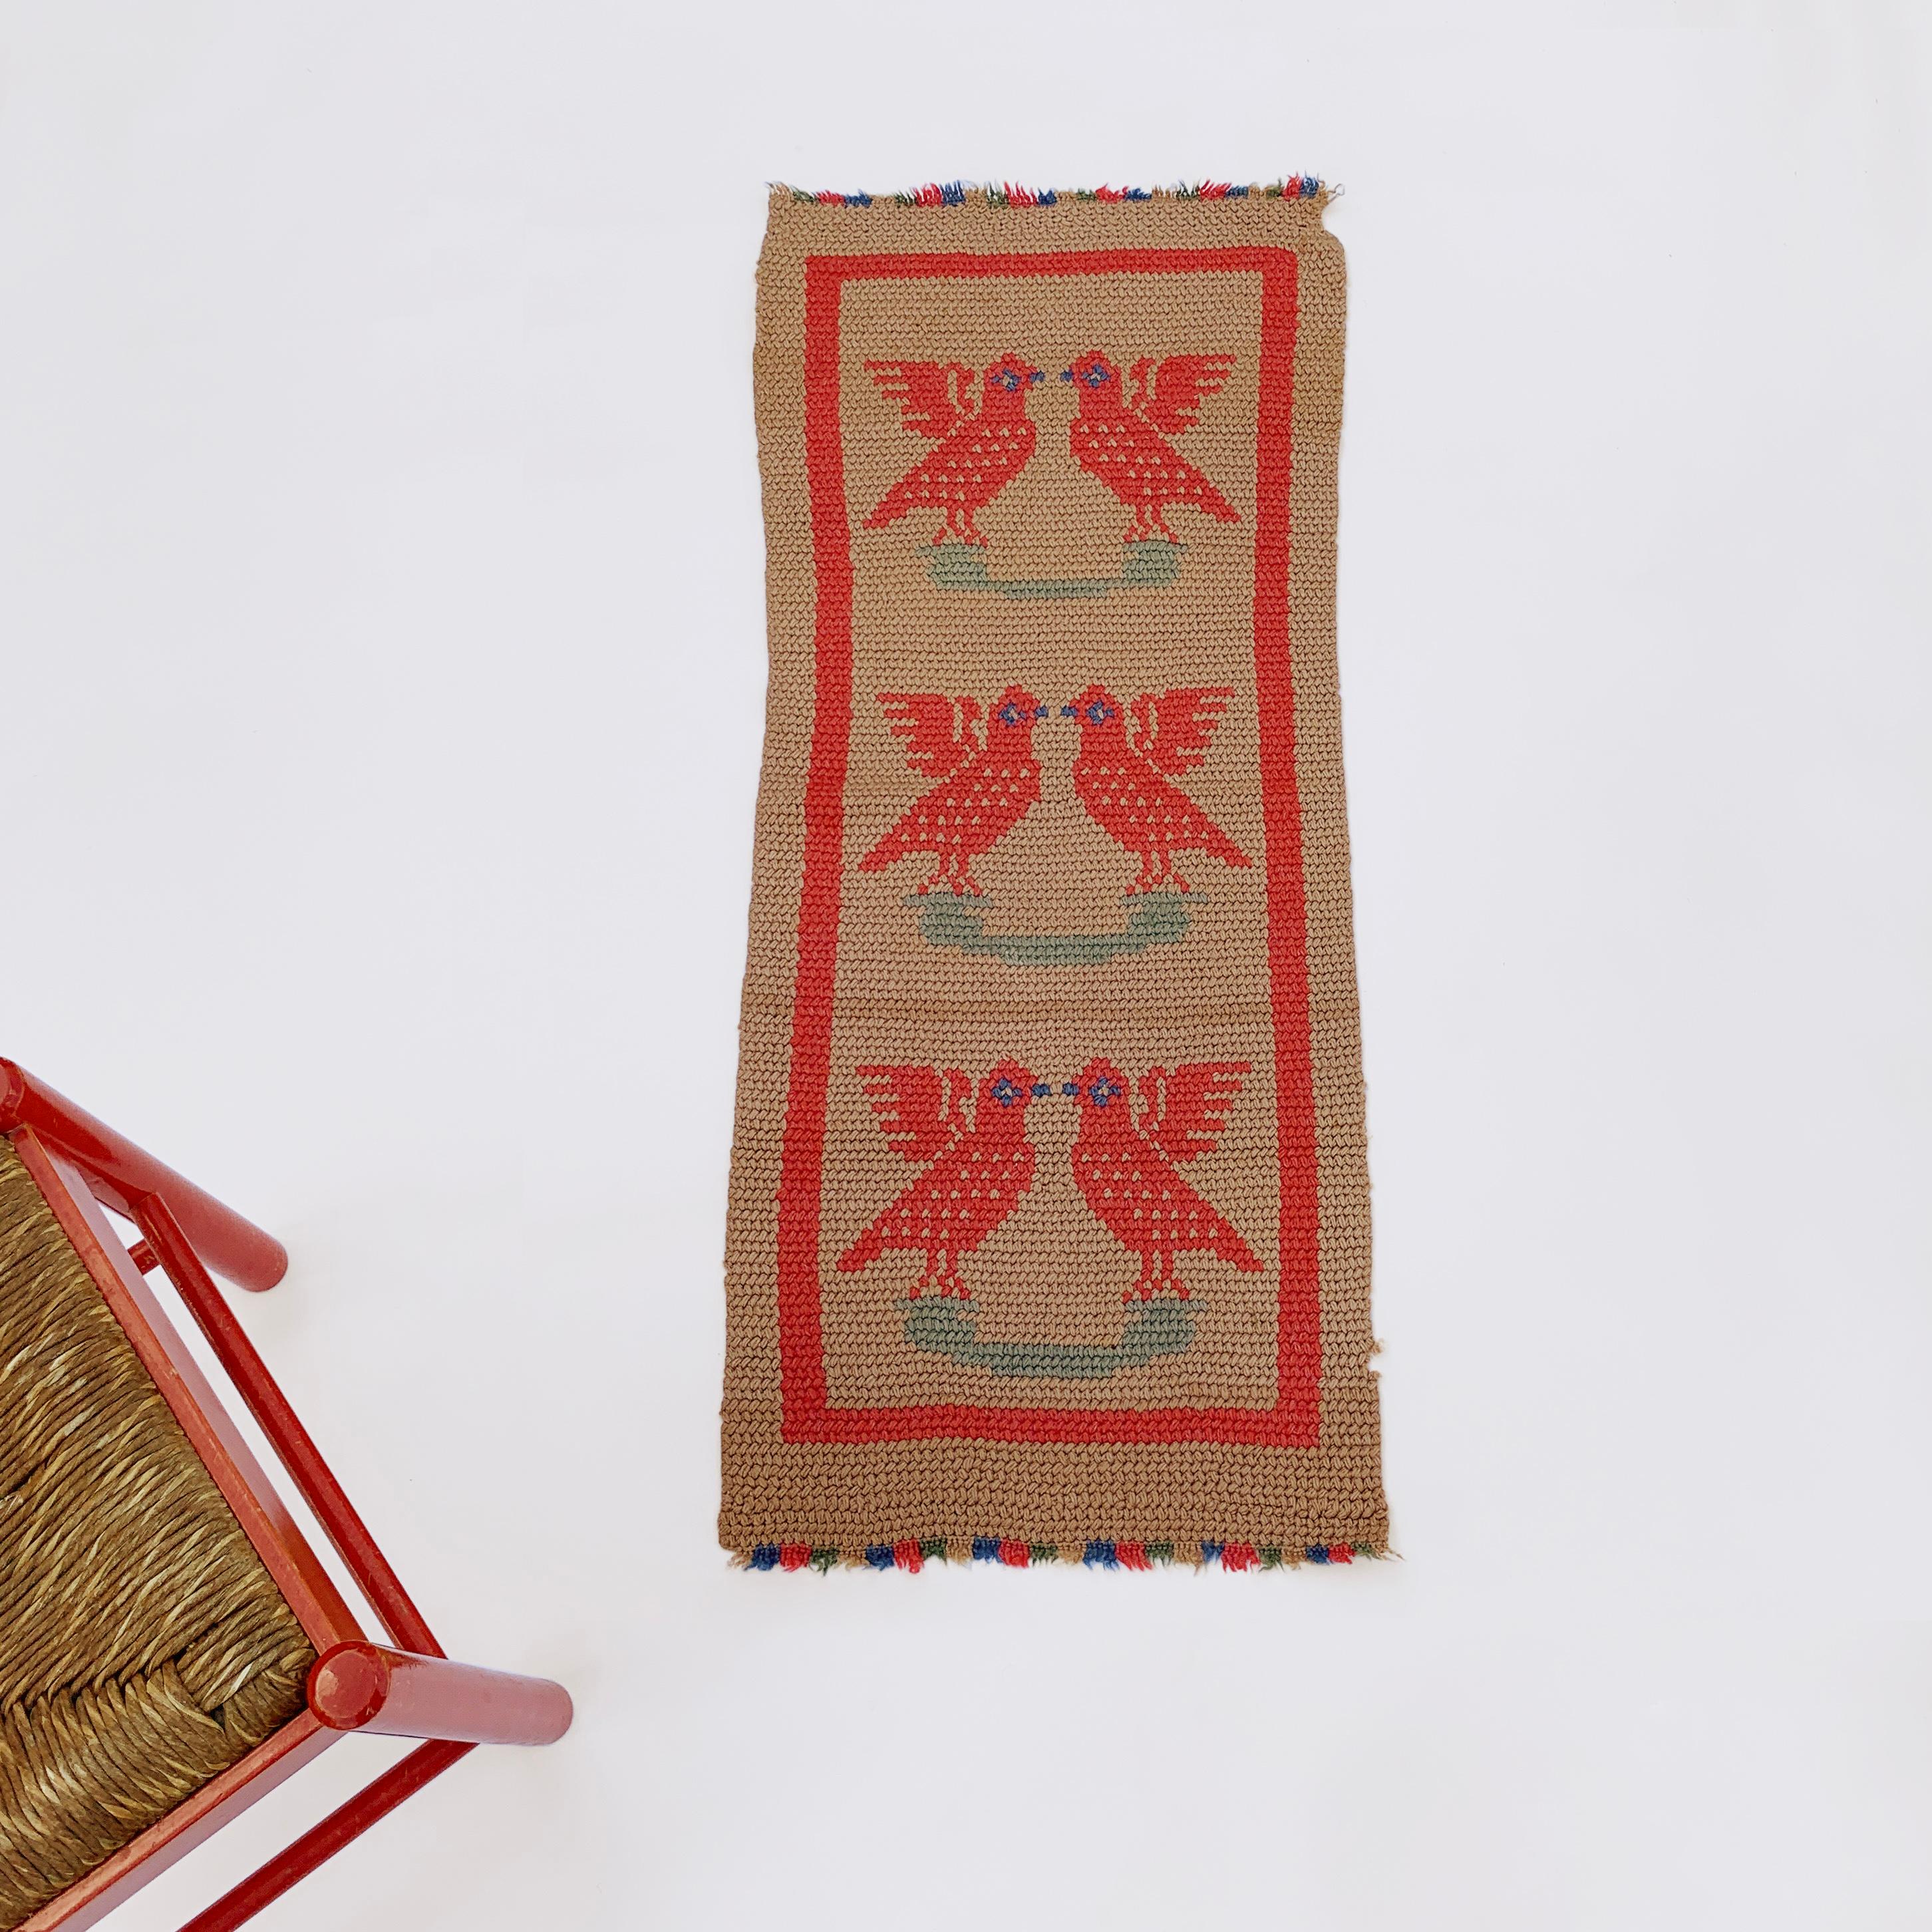 Folk Art Crochet Birds Runner Small Rug 1920s Vintage Wool Christmas Wall Hanging Floor